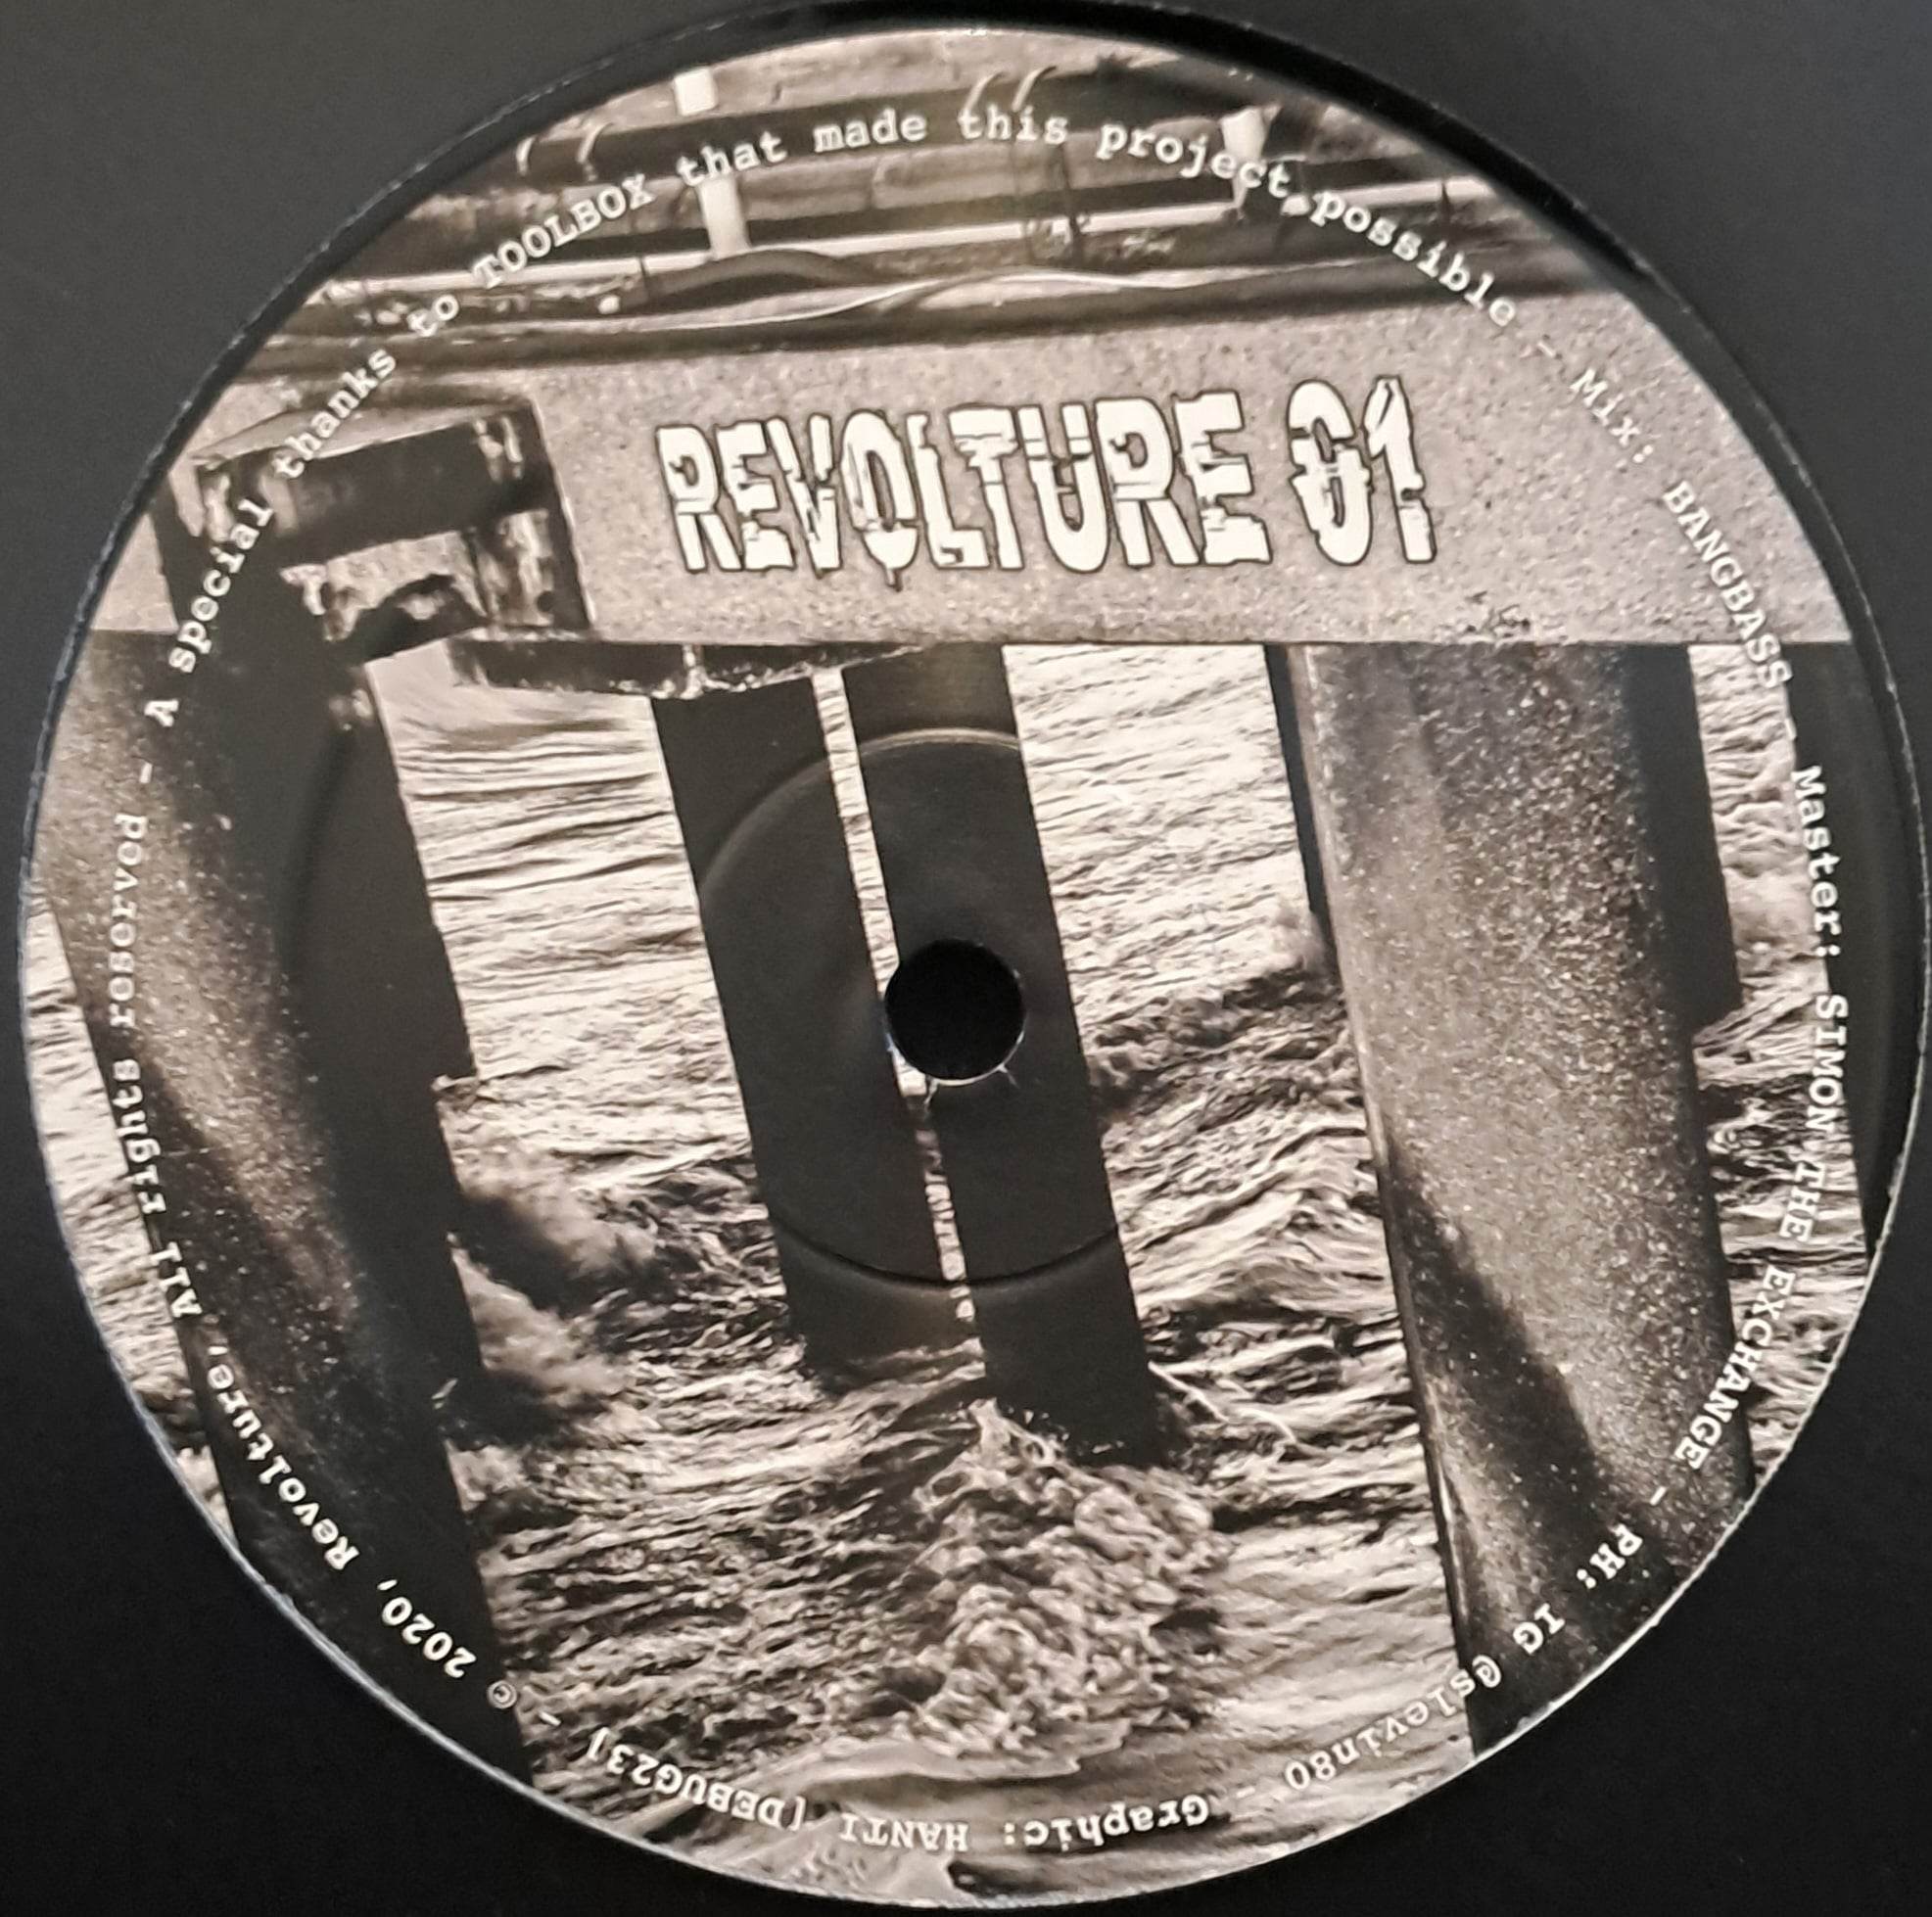 Revolture 01 (toute dernière copie en stock) - vinyle acid